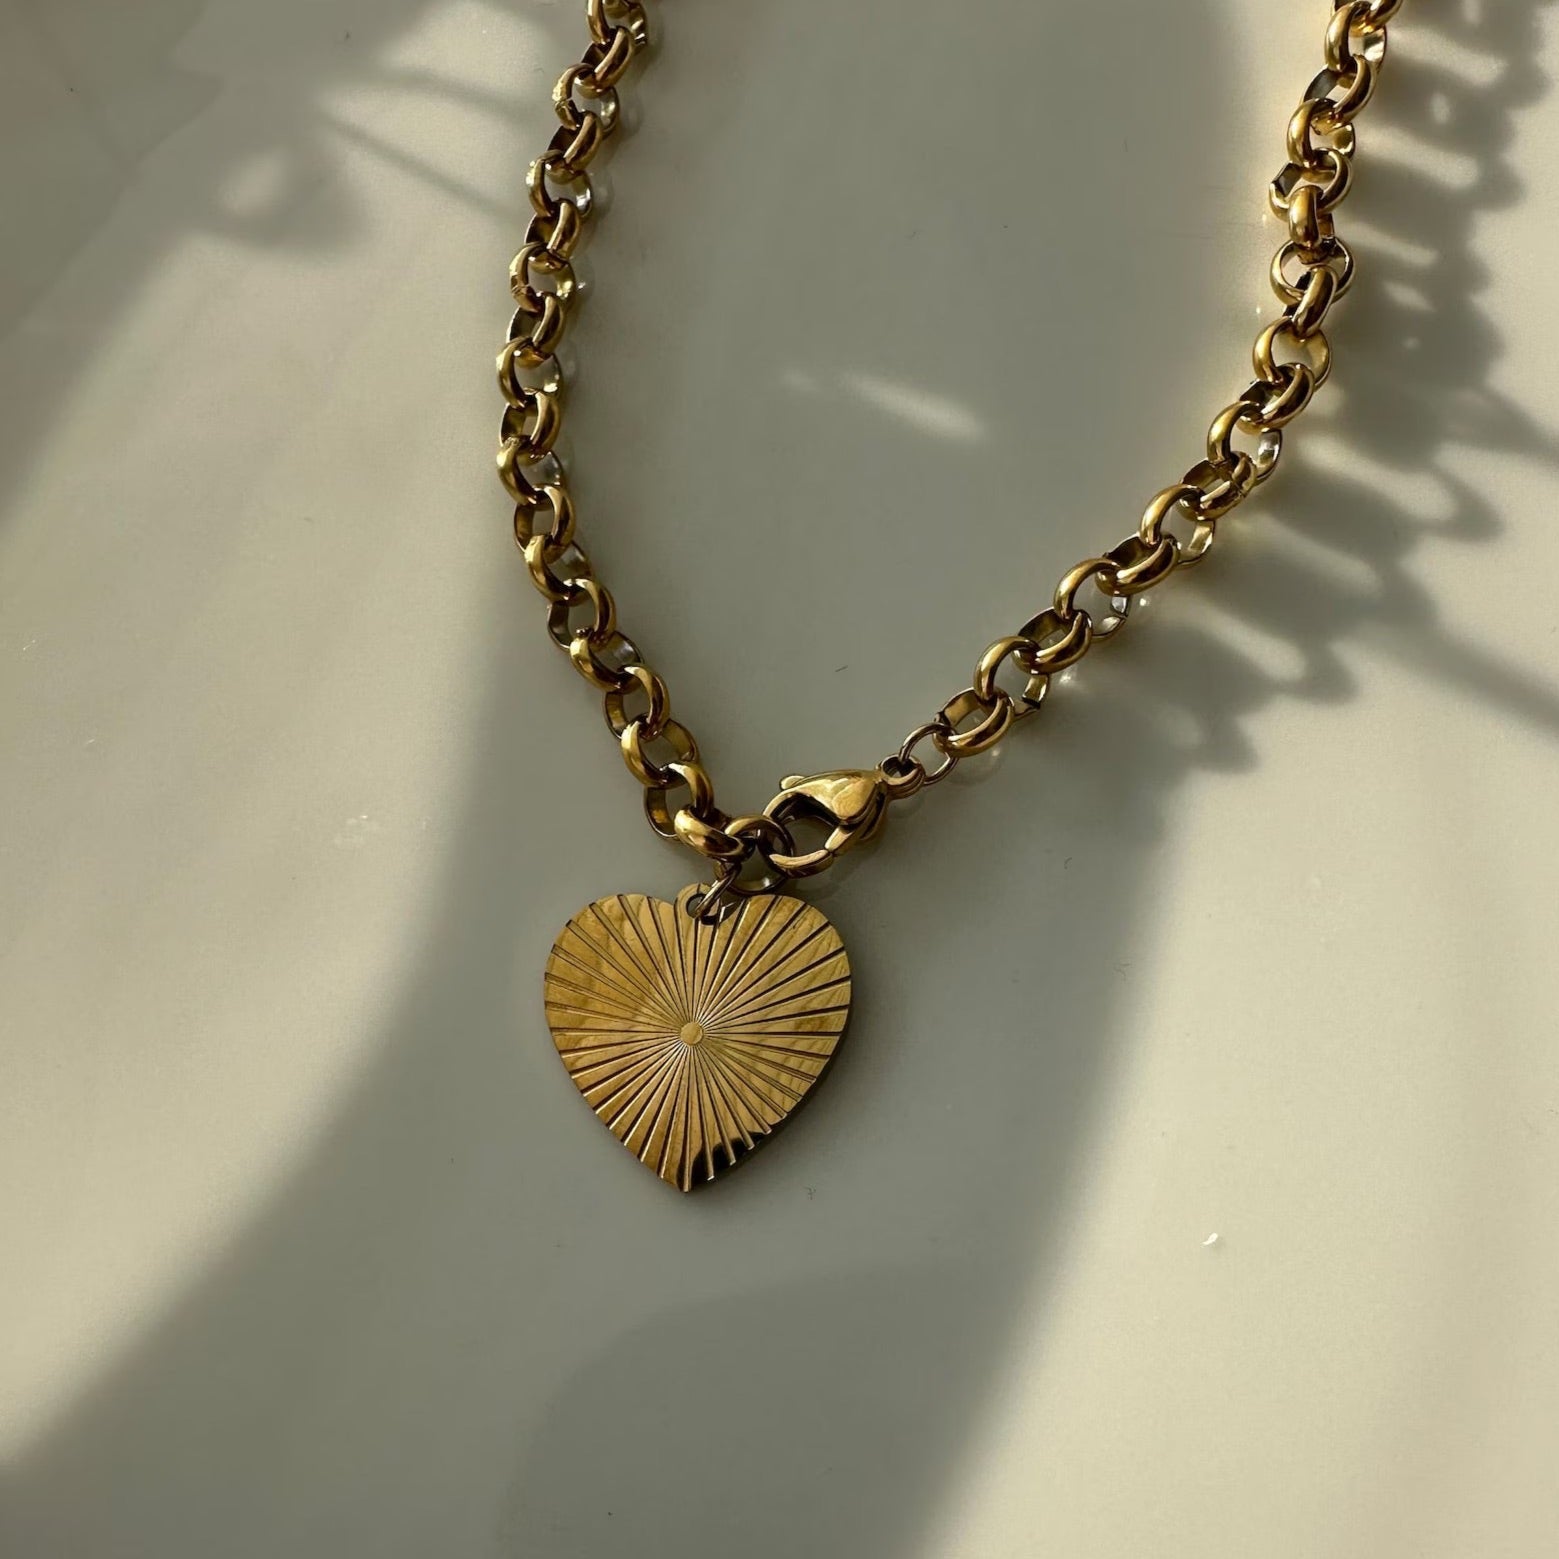 Fashionable Heart Pendant Necklace enhancing any ensemble